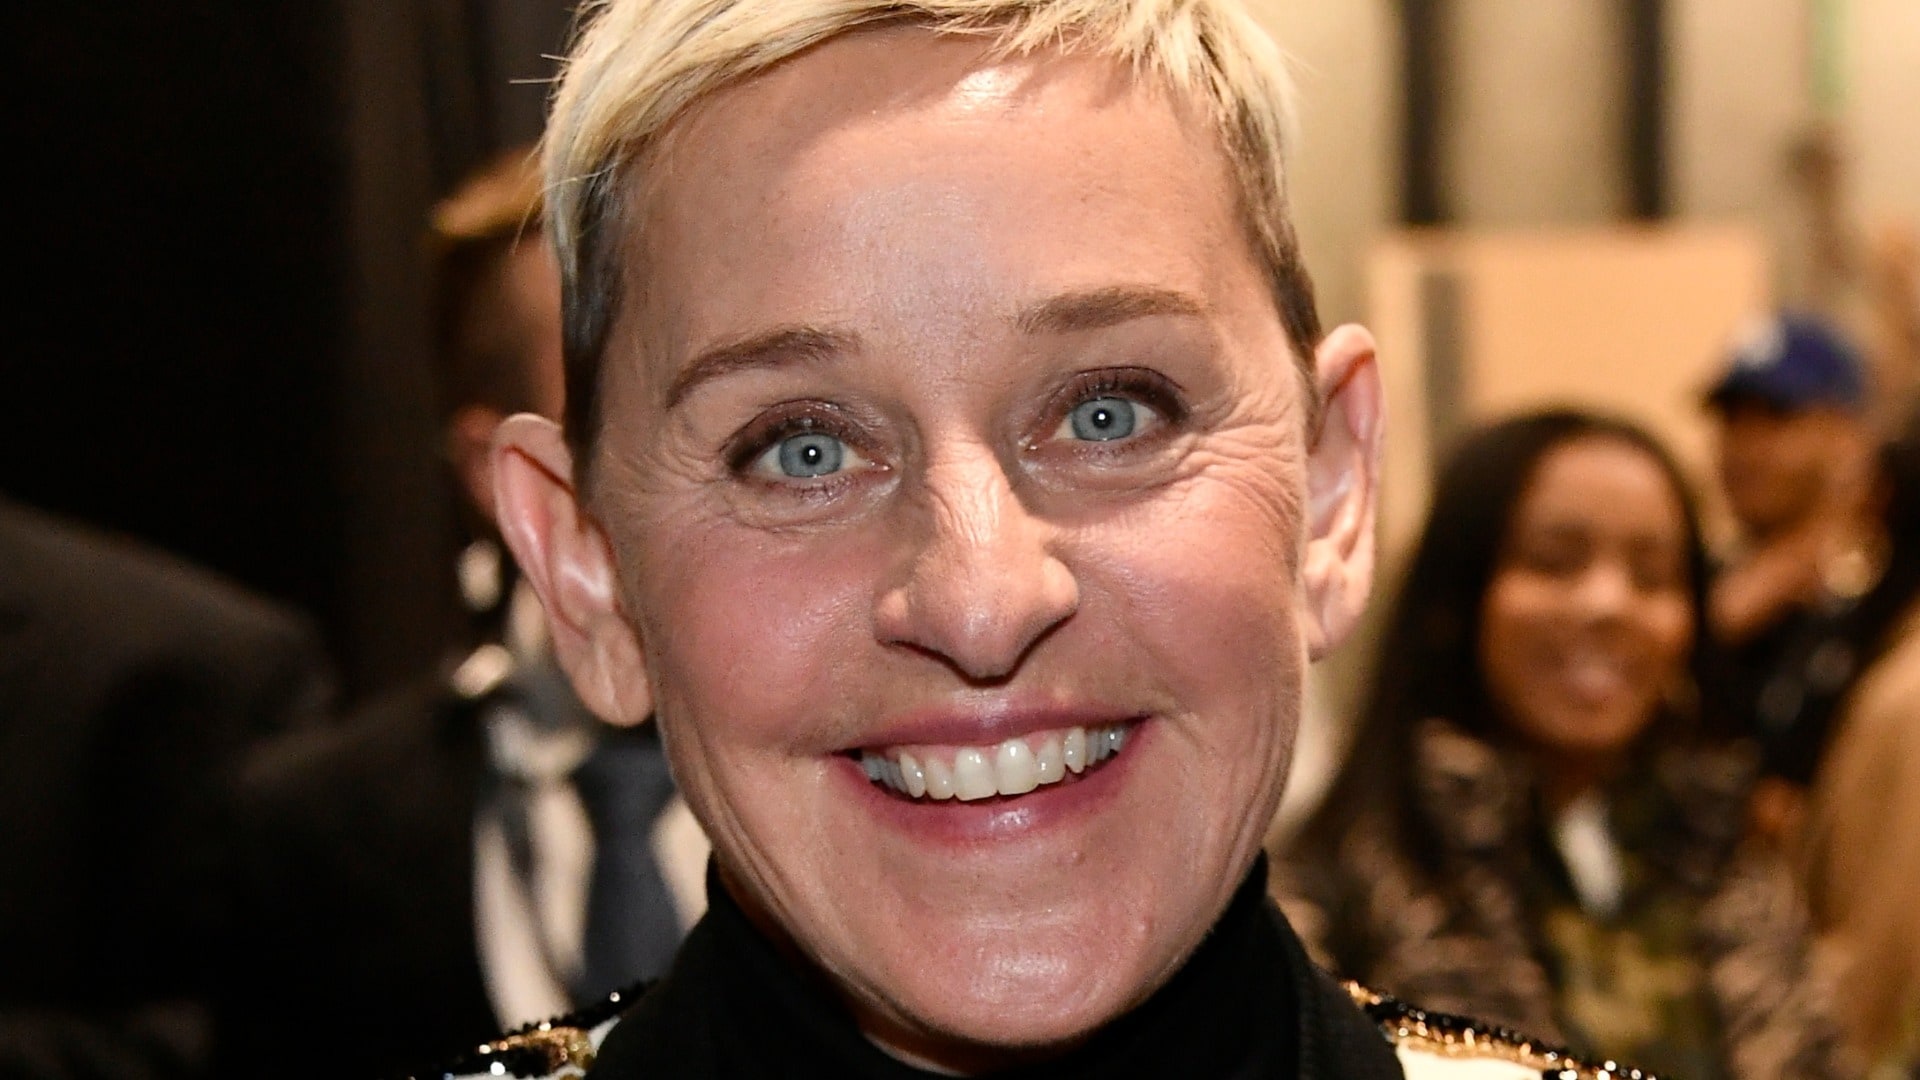 Ellen DeGeneres: An American talk show host, comedian, and actress. 1920x1080 Full HD Wallpaper.